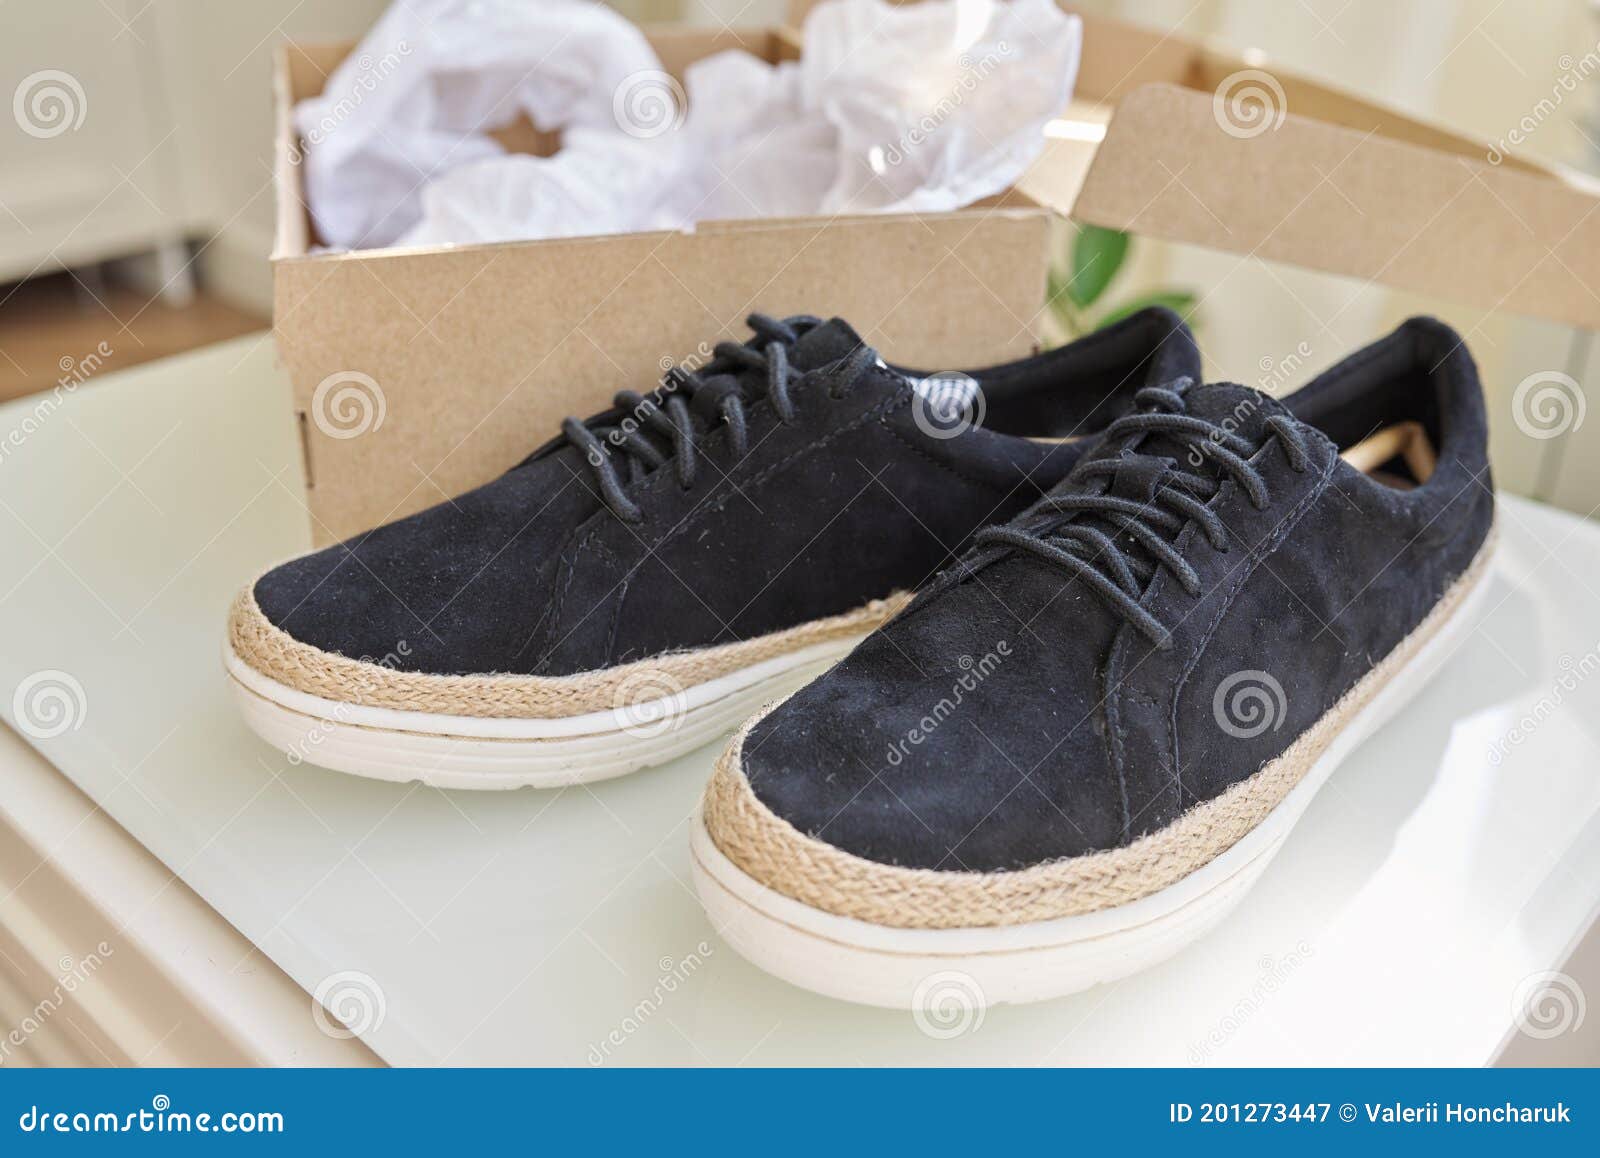 Nuevas Zapatos-tenis Naturales Negras Para Del a Caja En Casa Imagen de archivo - Imagen de fashionable, deslumbrante: 201273447